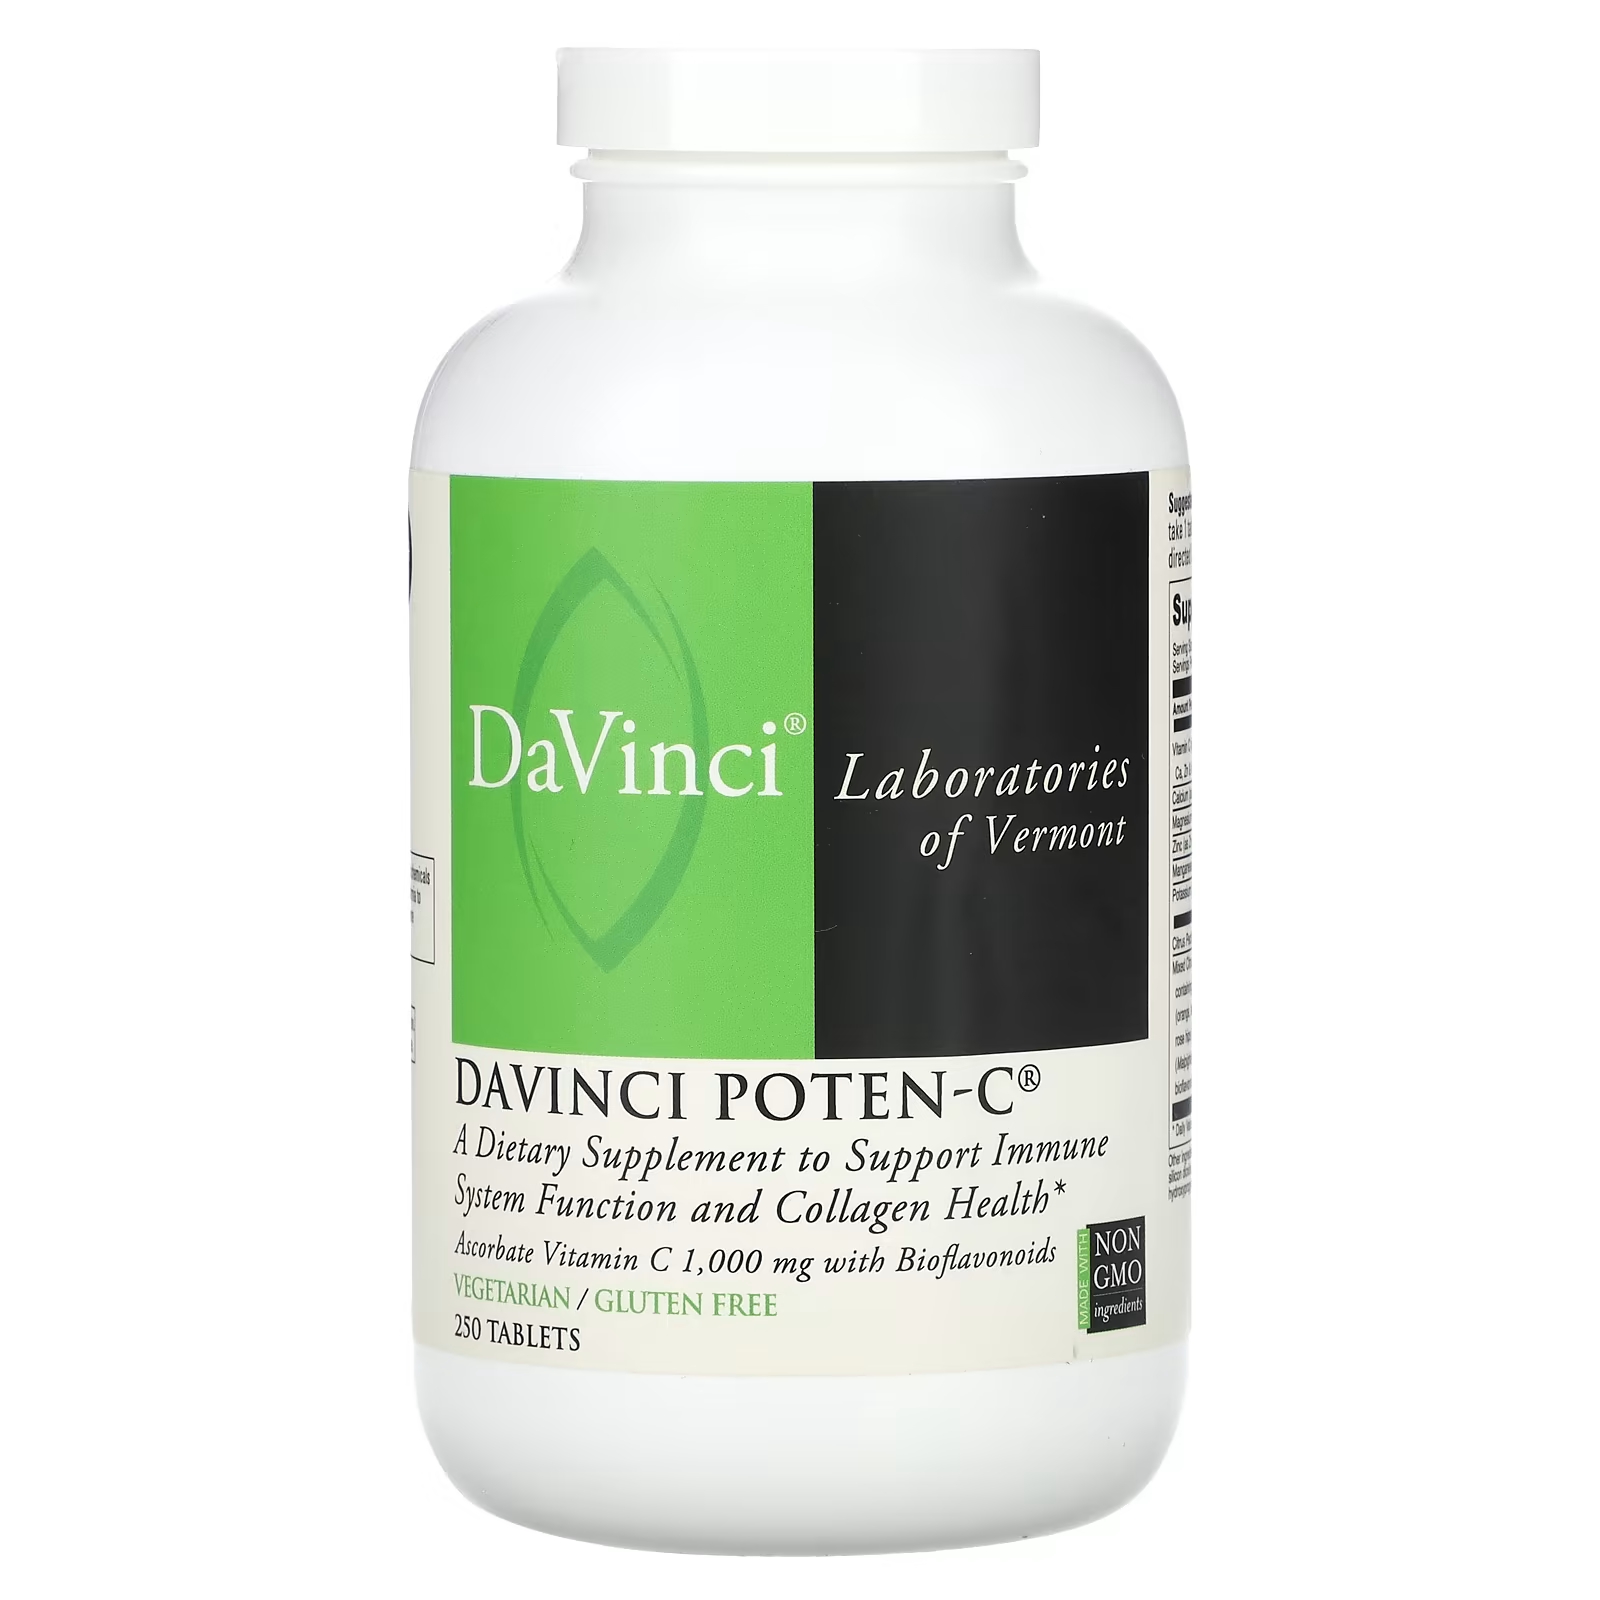 Пищевая добавка DaVinci Laboratories of Vermont Davinci Poten-C, 250 таблеток пищевая добавка davinci laboratories of vermont davinci poten c 250 таблеток